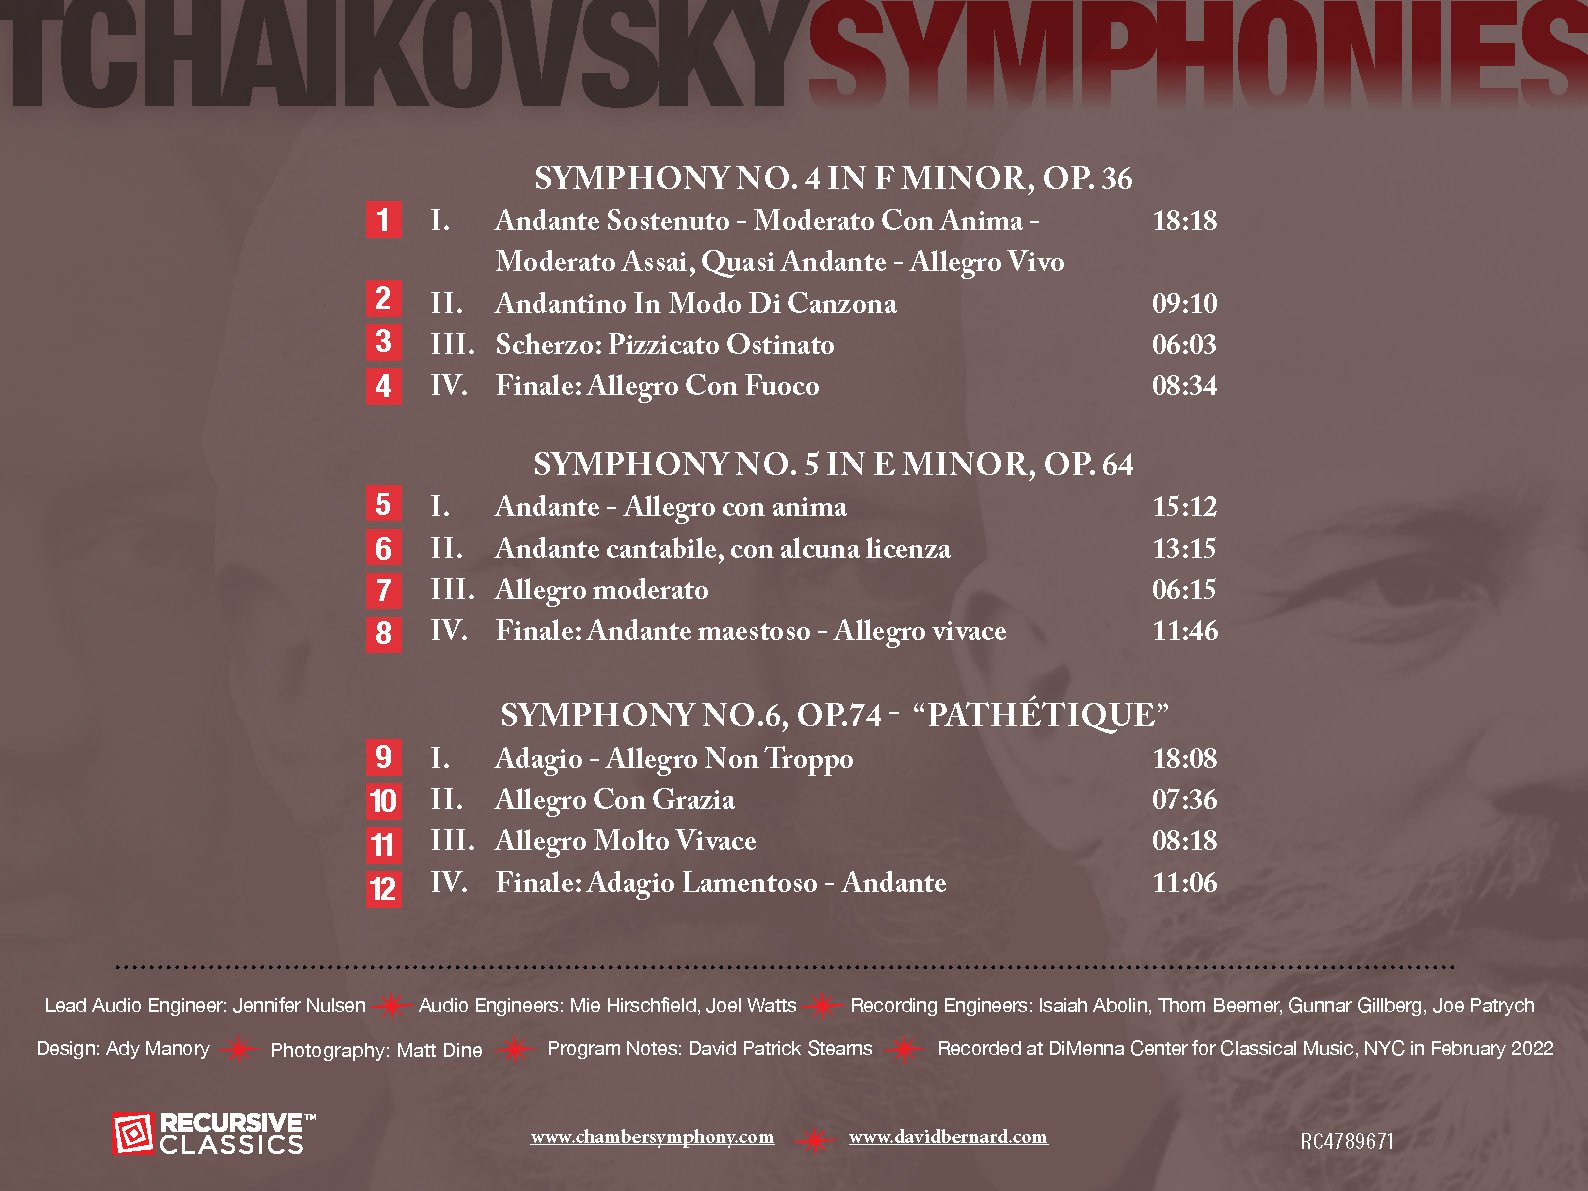 Recursive Classics - Tchaikovsky Symphonies No. 4, 5 & 6 - RC4789671 Digital Booklet_Page_02.jpg